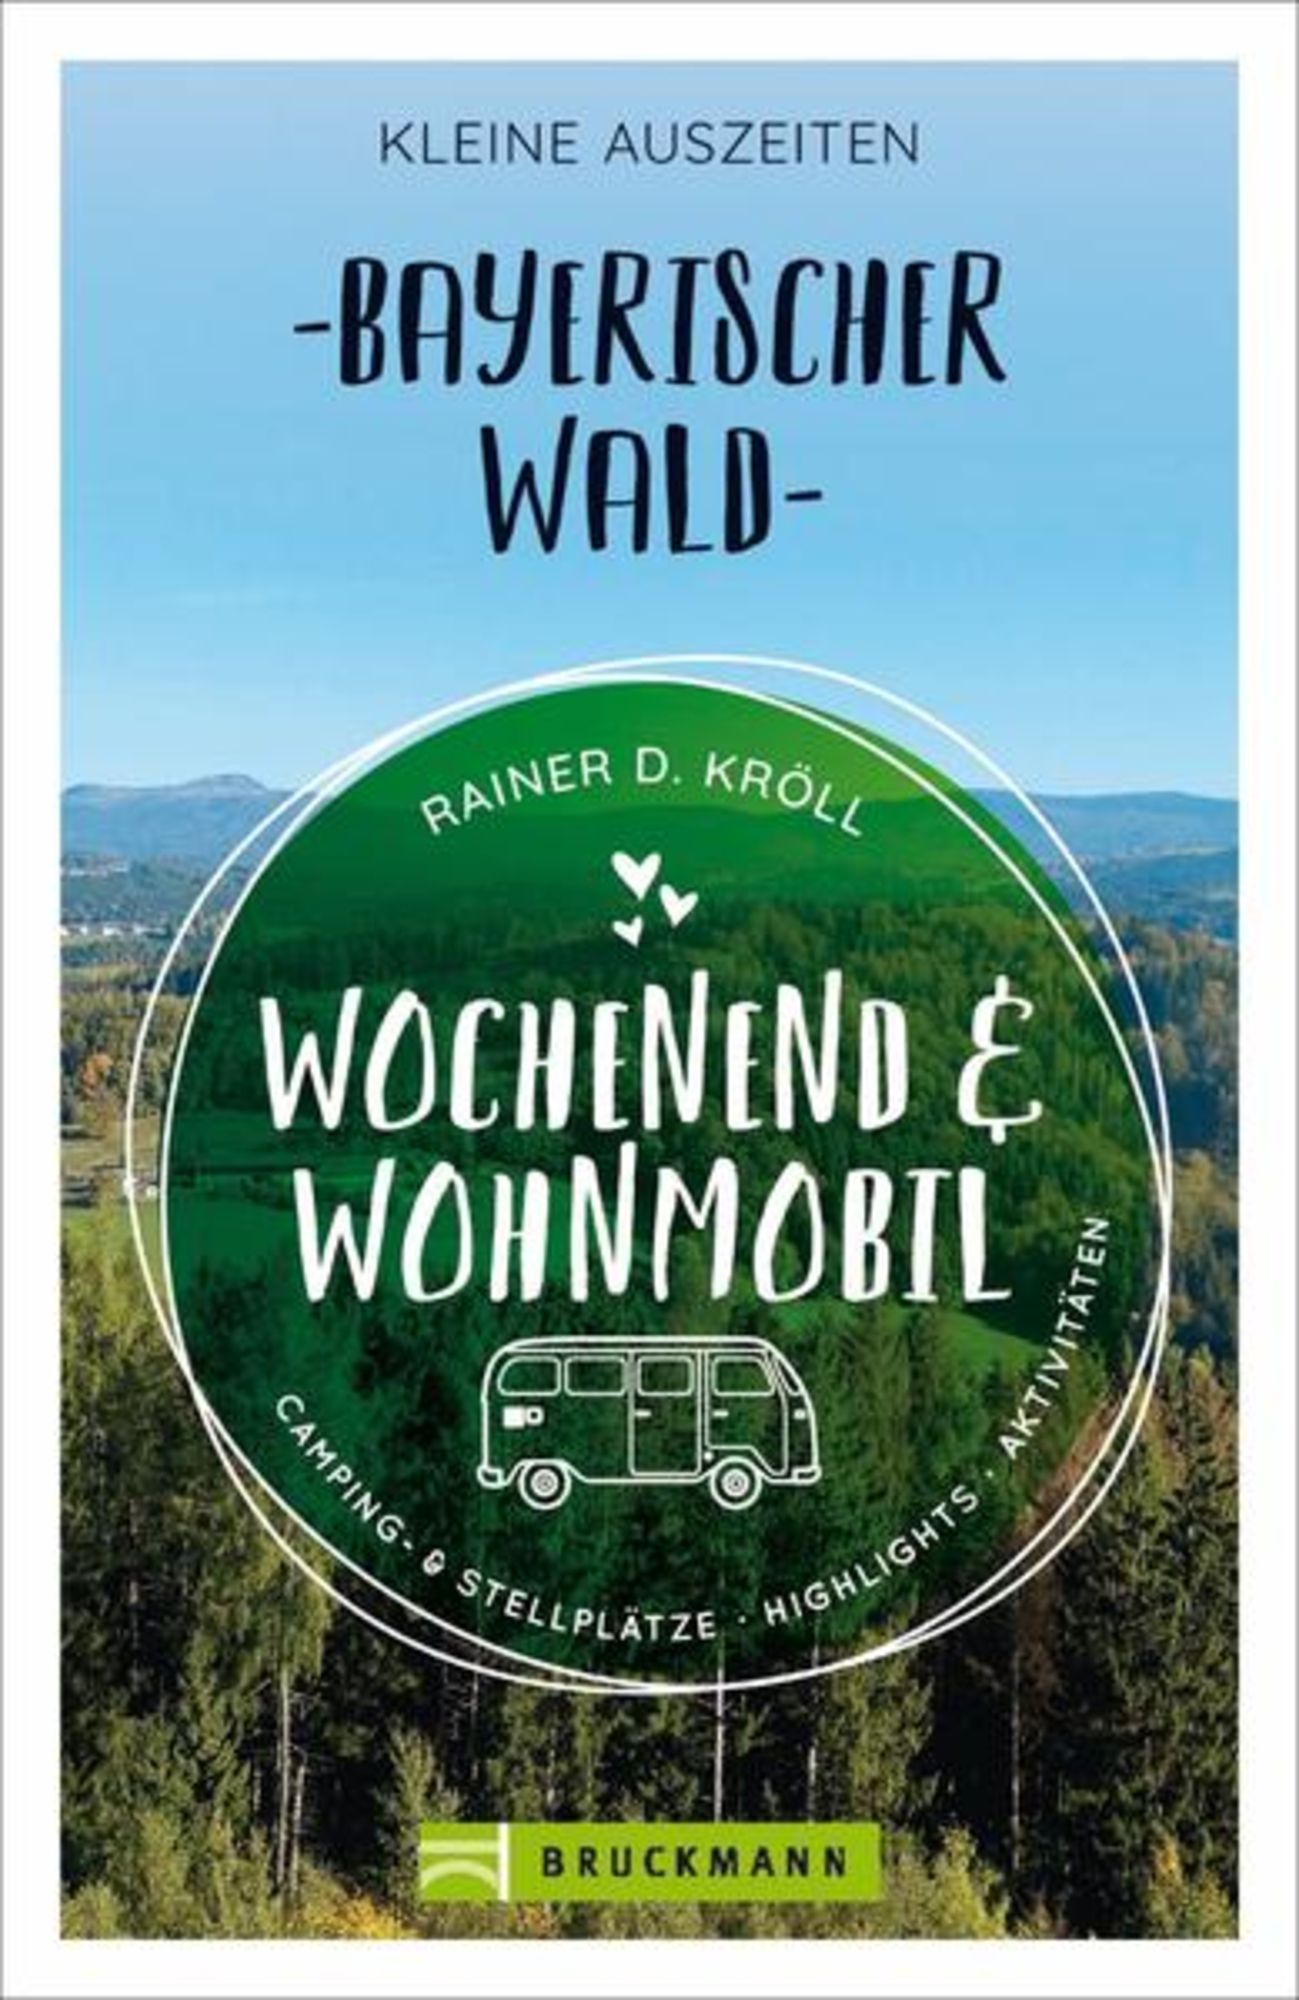 Wochenend und Wohnmobil - Kleine Auszeiten Bayerischer Wald' von 'Rainer D.  Kröll' - Buch - '978-3-7343-1840-5